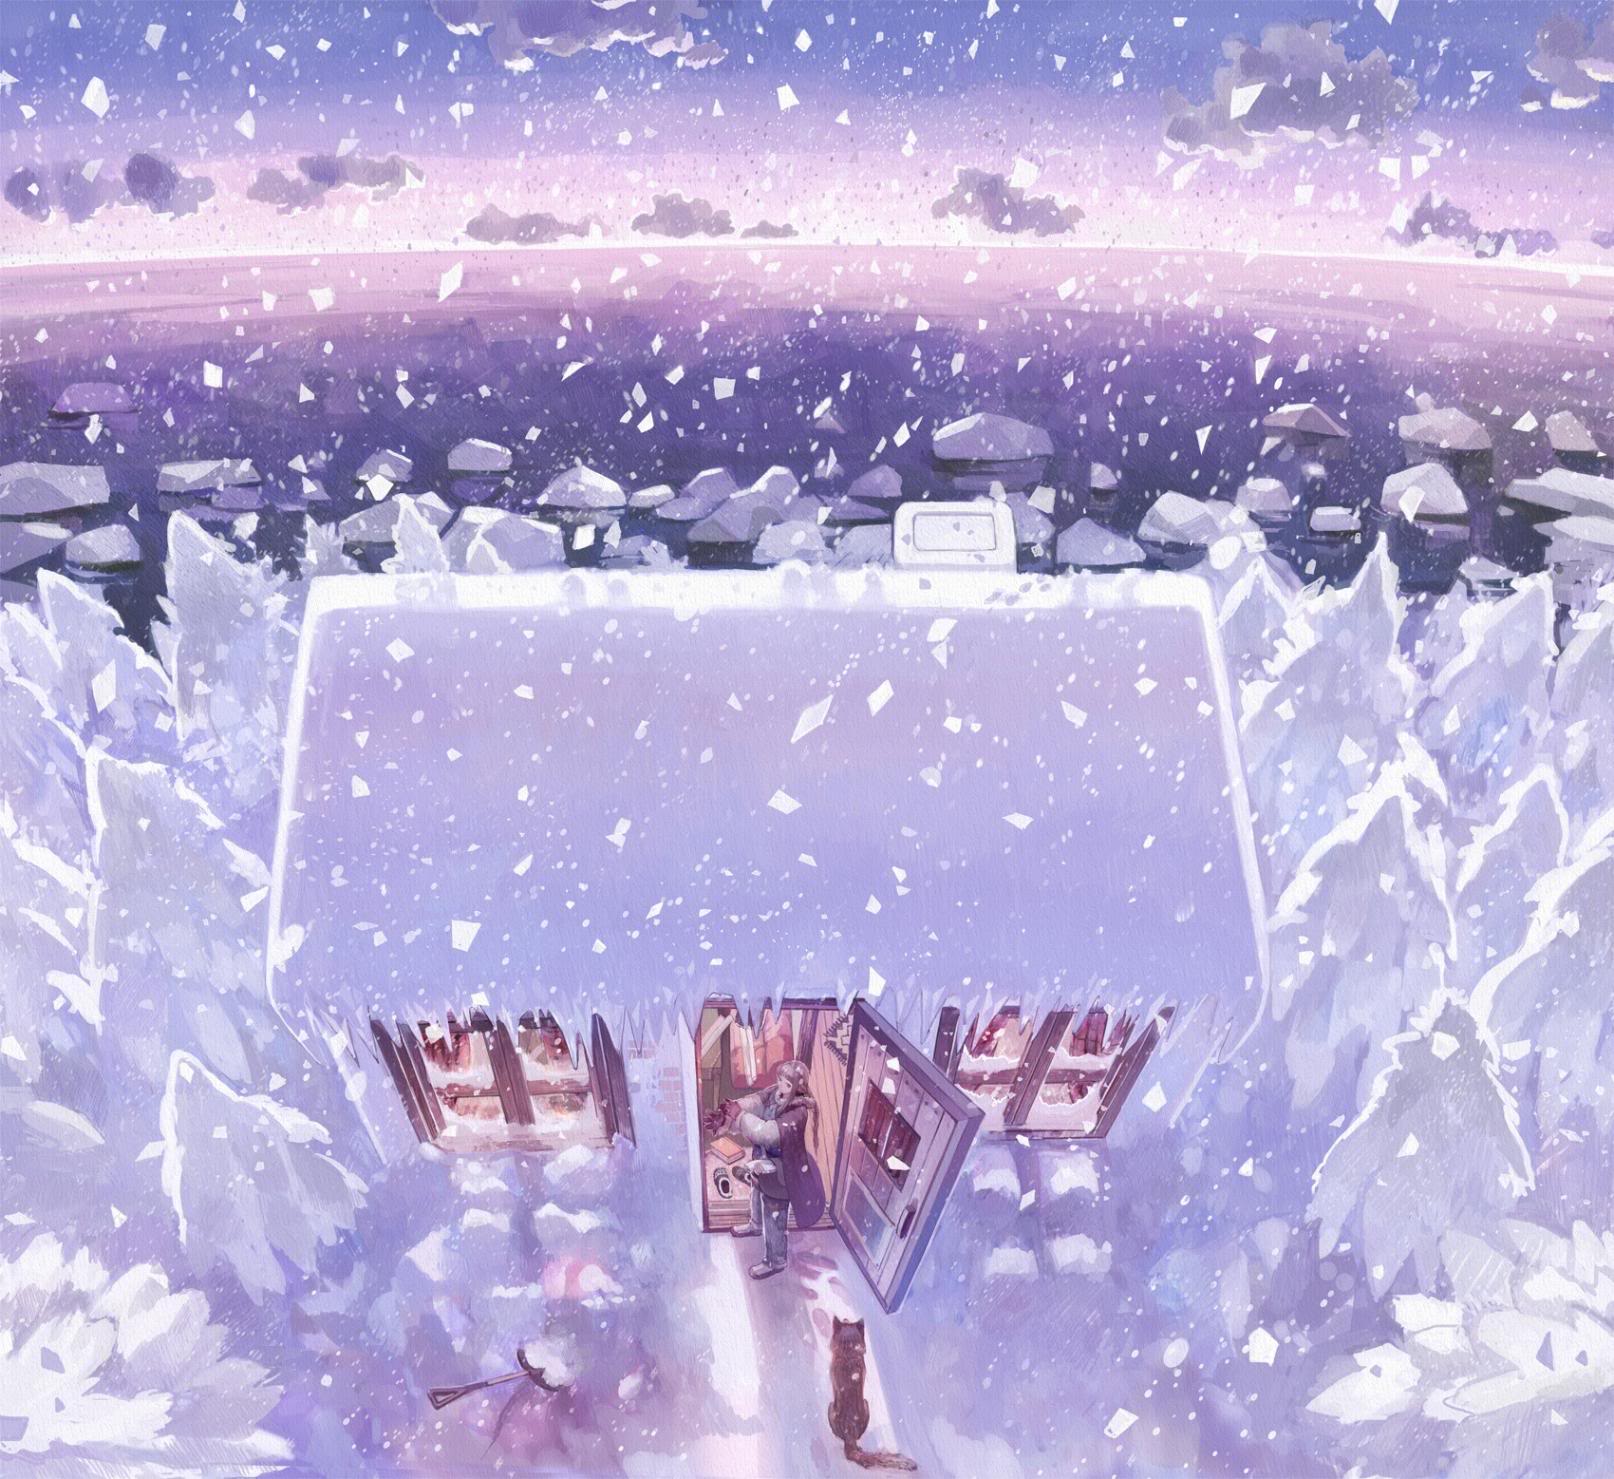 二次元喜欢的场景图~雪~意境~插画~背景~ http://caoqing86qzoneqq